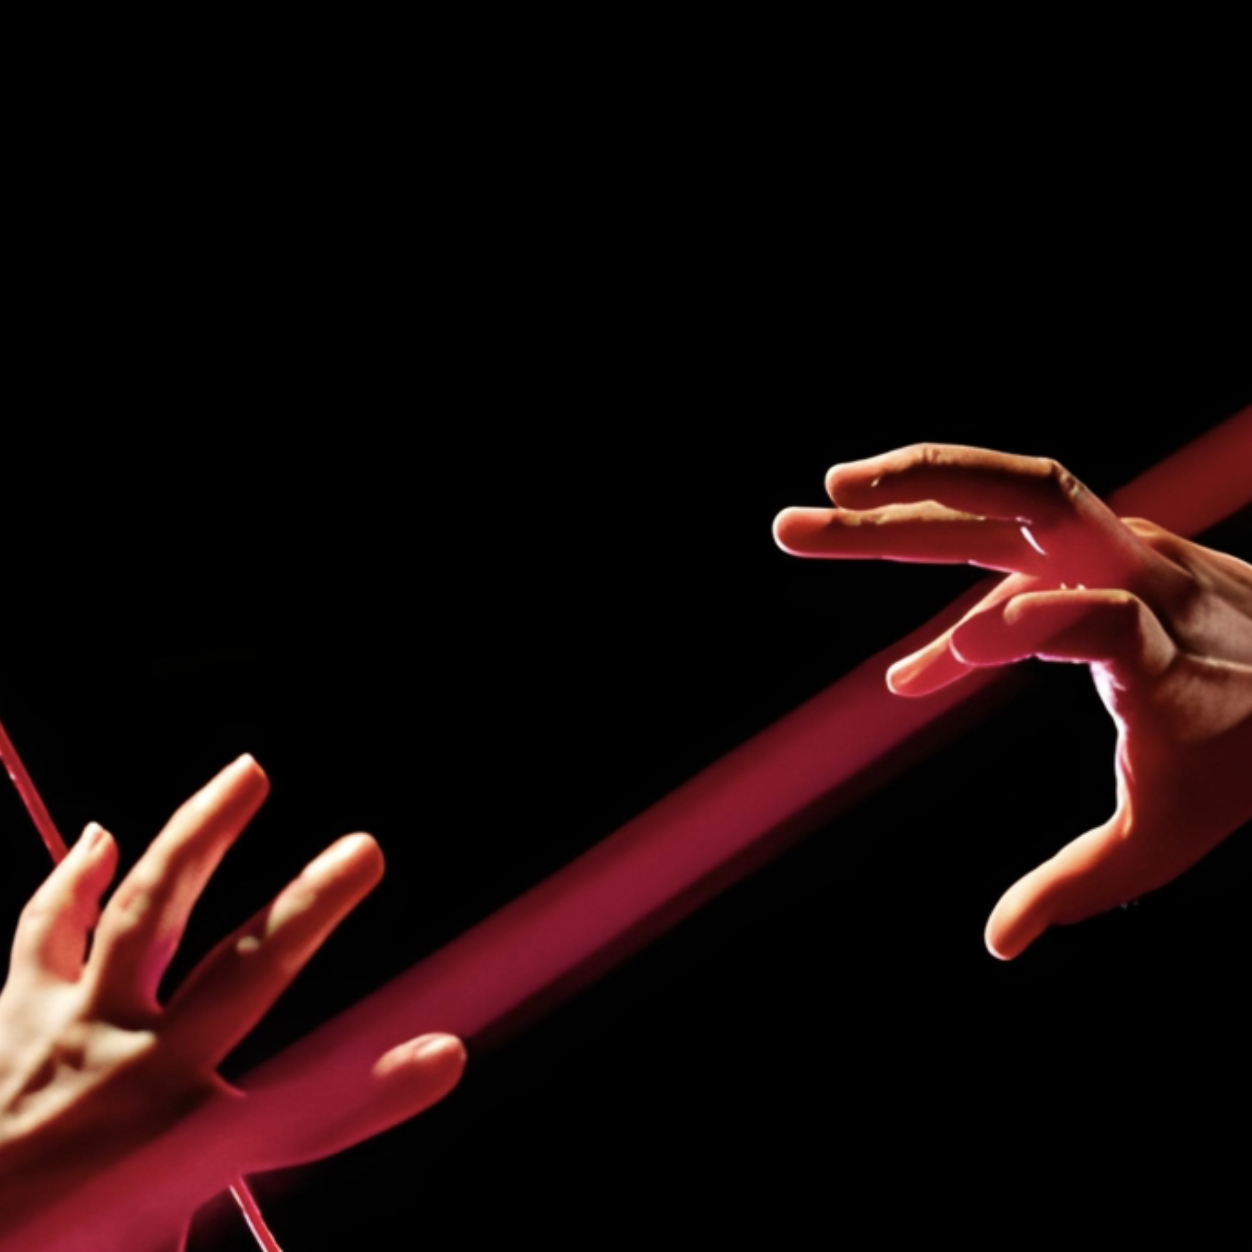 Zwei weiße Hände bewegen sich vor einem schwarzen Hintergrund aufeinander zu und wollen nacheinander greifen. Ein roter Lichtstrahl durchbricht das Bild.